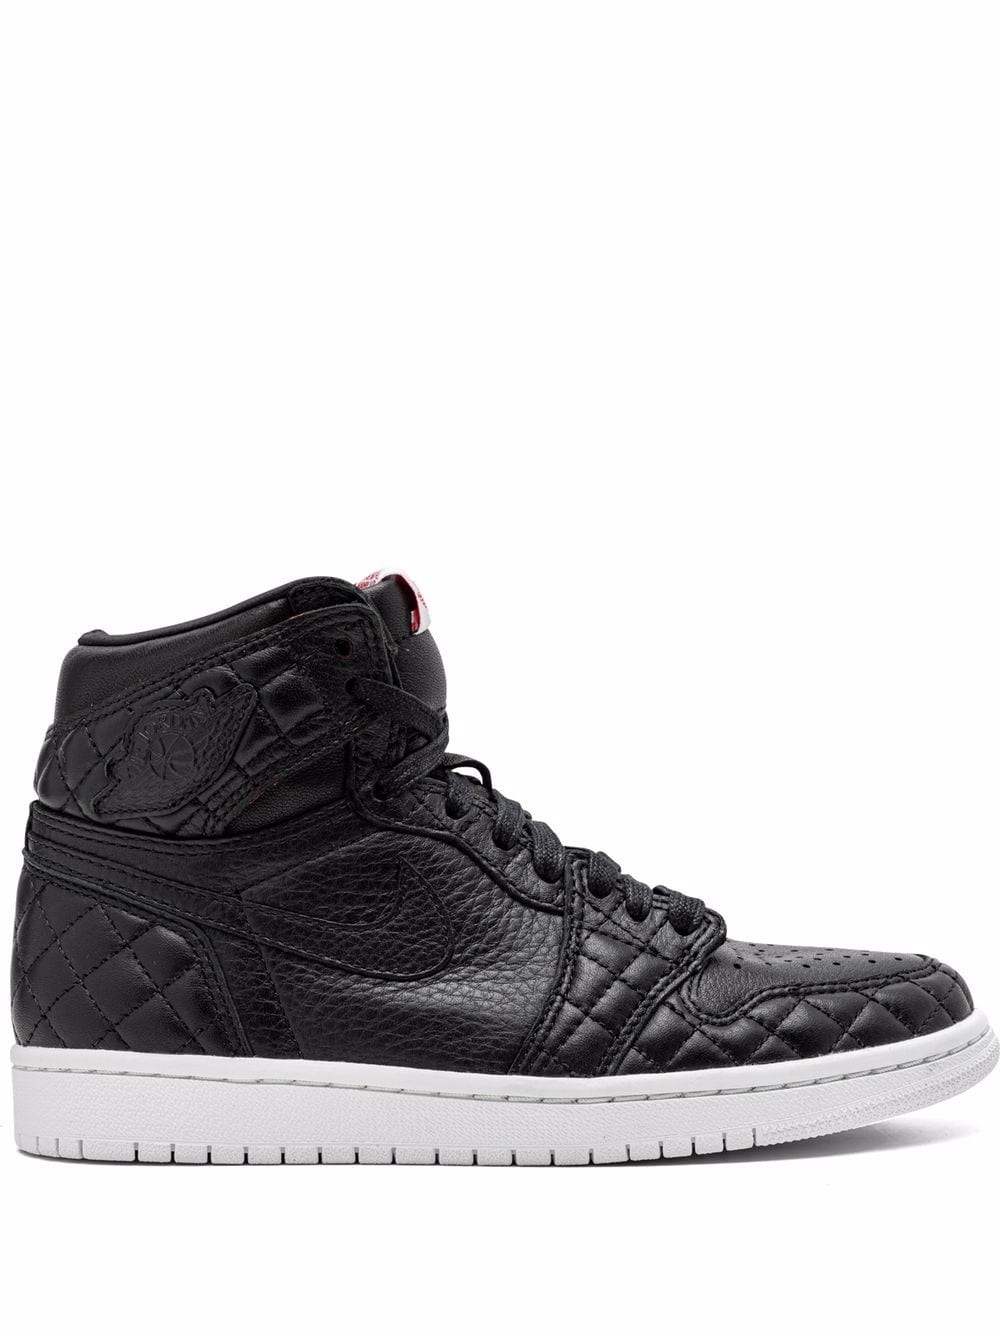 Jordan Air Jordan 1 Retro OG sneakers - Black